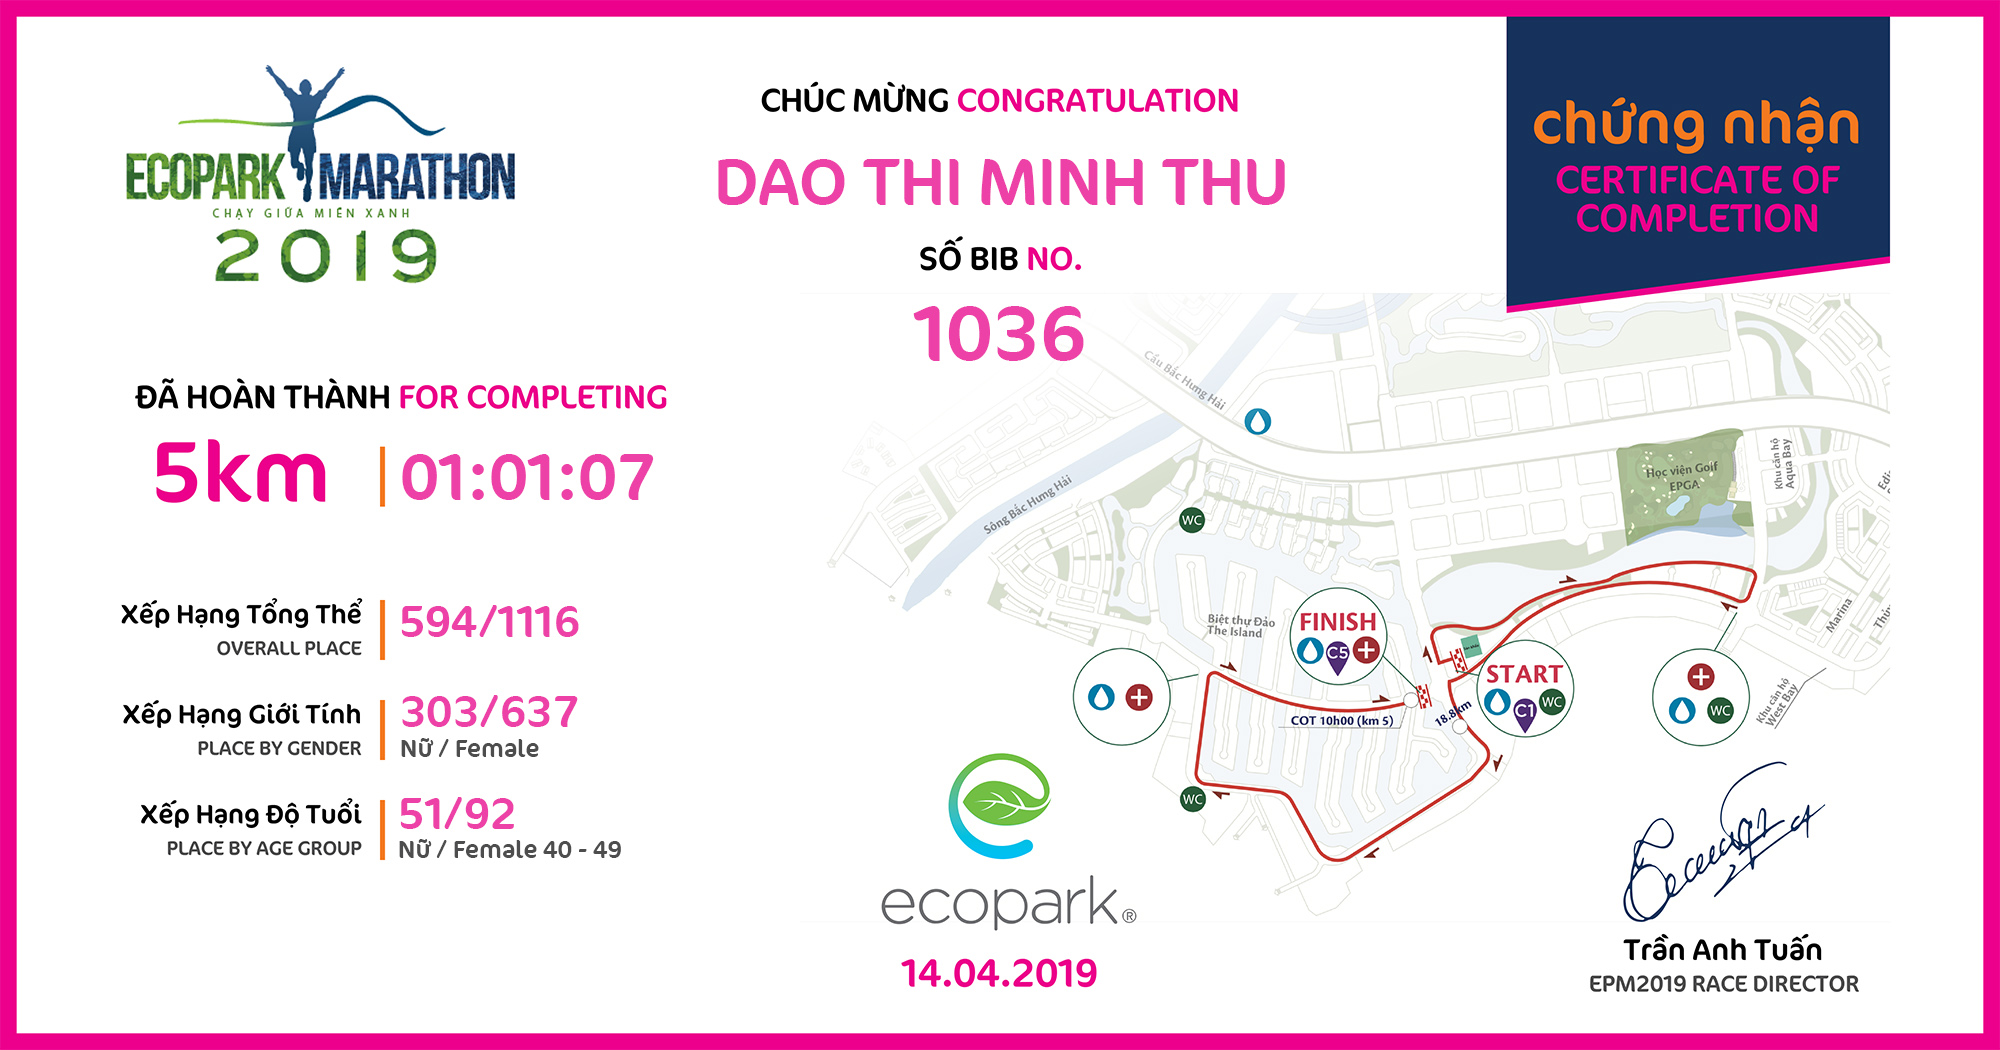 1036 - Dao Thi Minh Thu